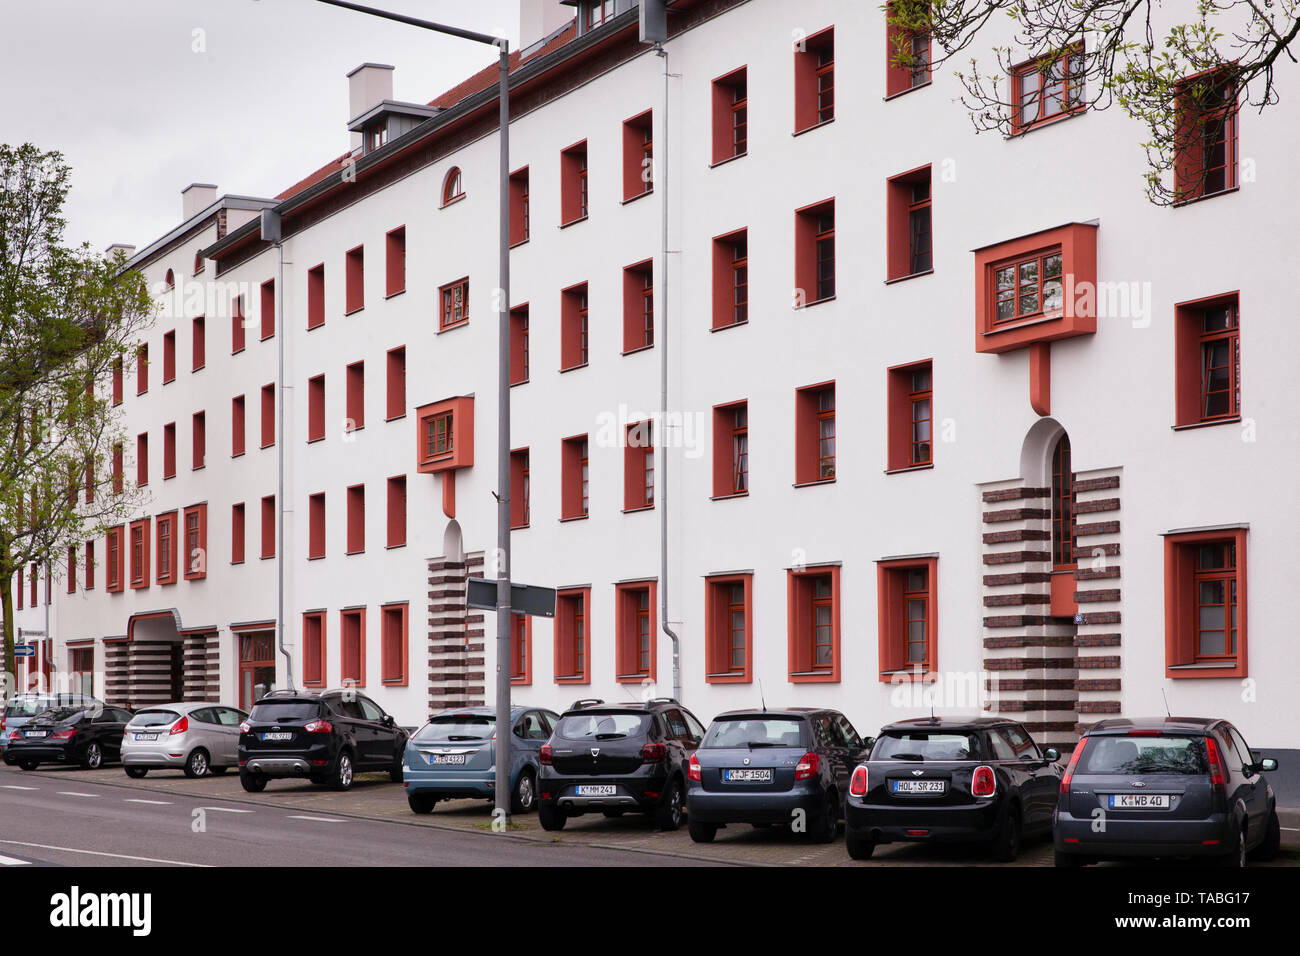 Il Naumann complesso residenziale nel quartiere Riehl, costruita negli anni 1927-29, Colonia, Germania. die Naumannsiedlung im Stadtteil Riehl, in den Jahr Foto Stock